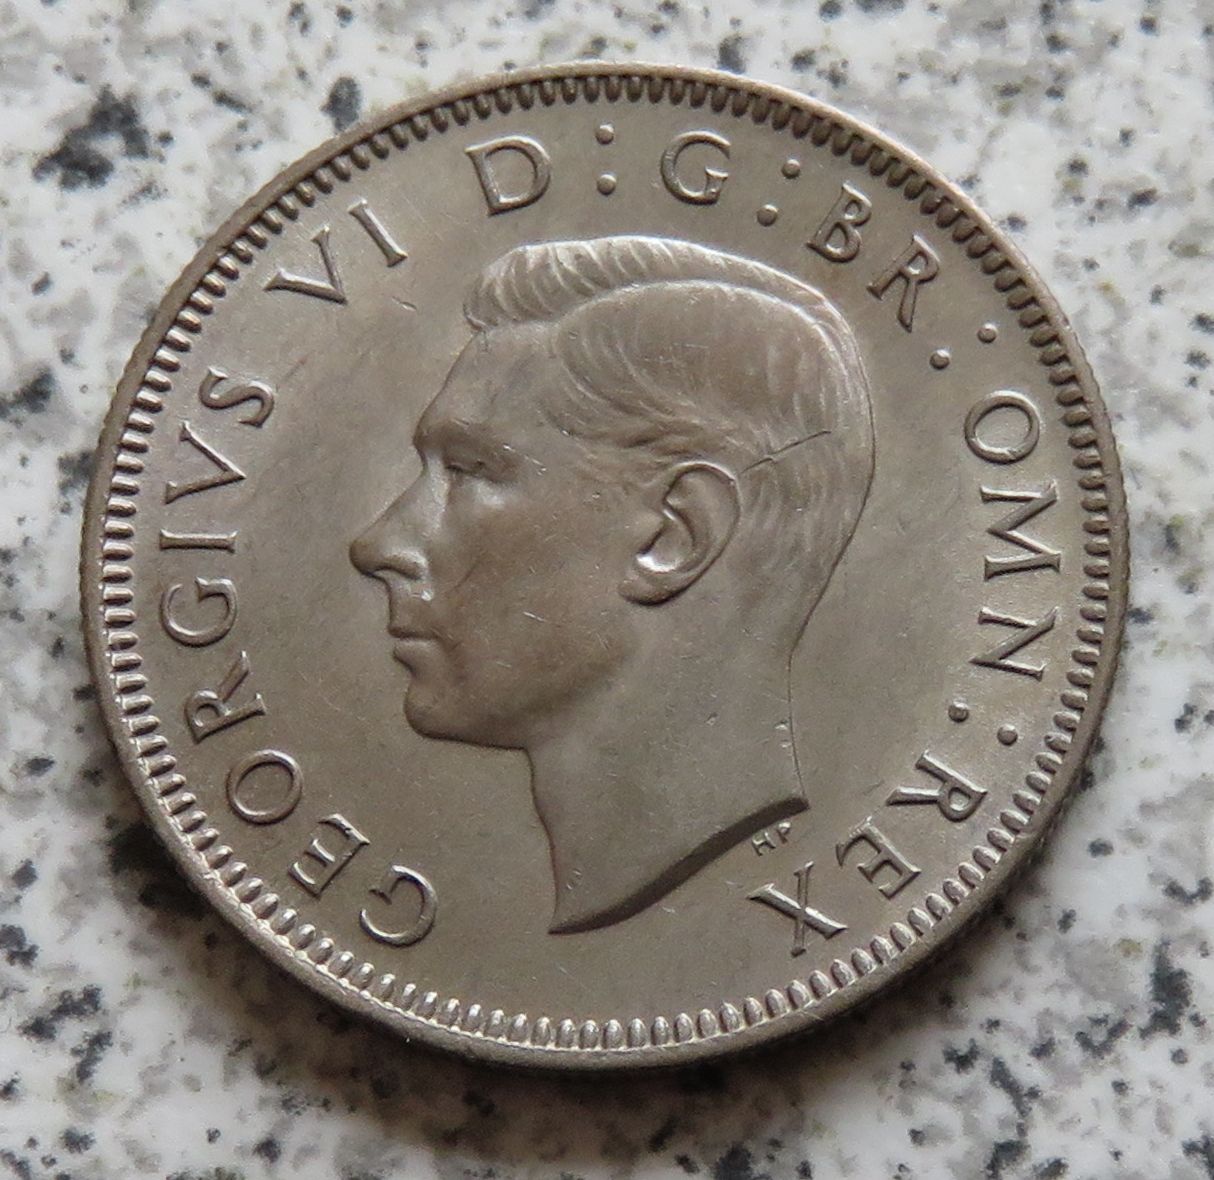  Großbritannien 1 Shilling 1947, Englisch, Erhaltung   